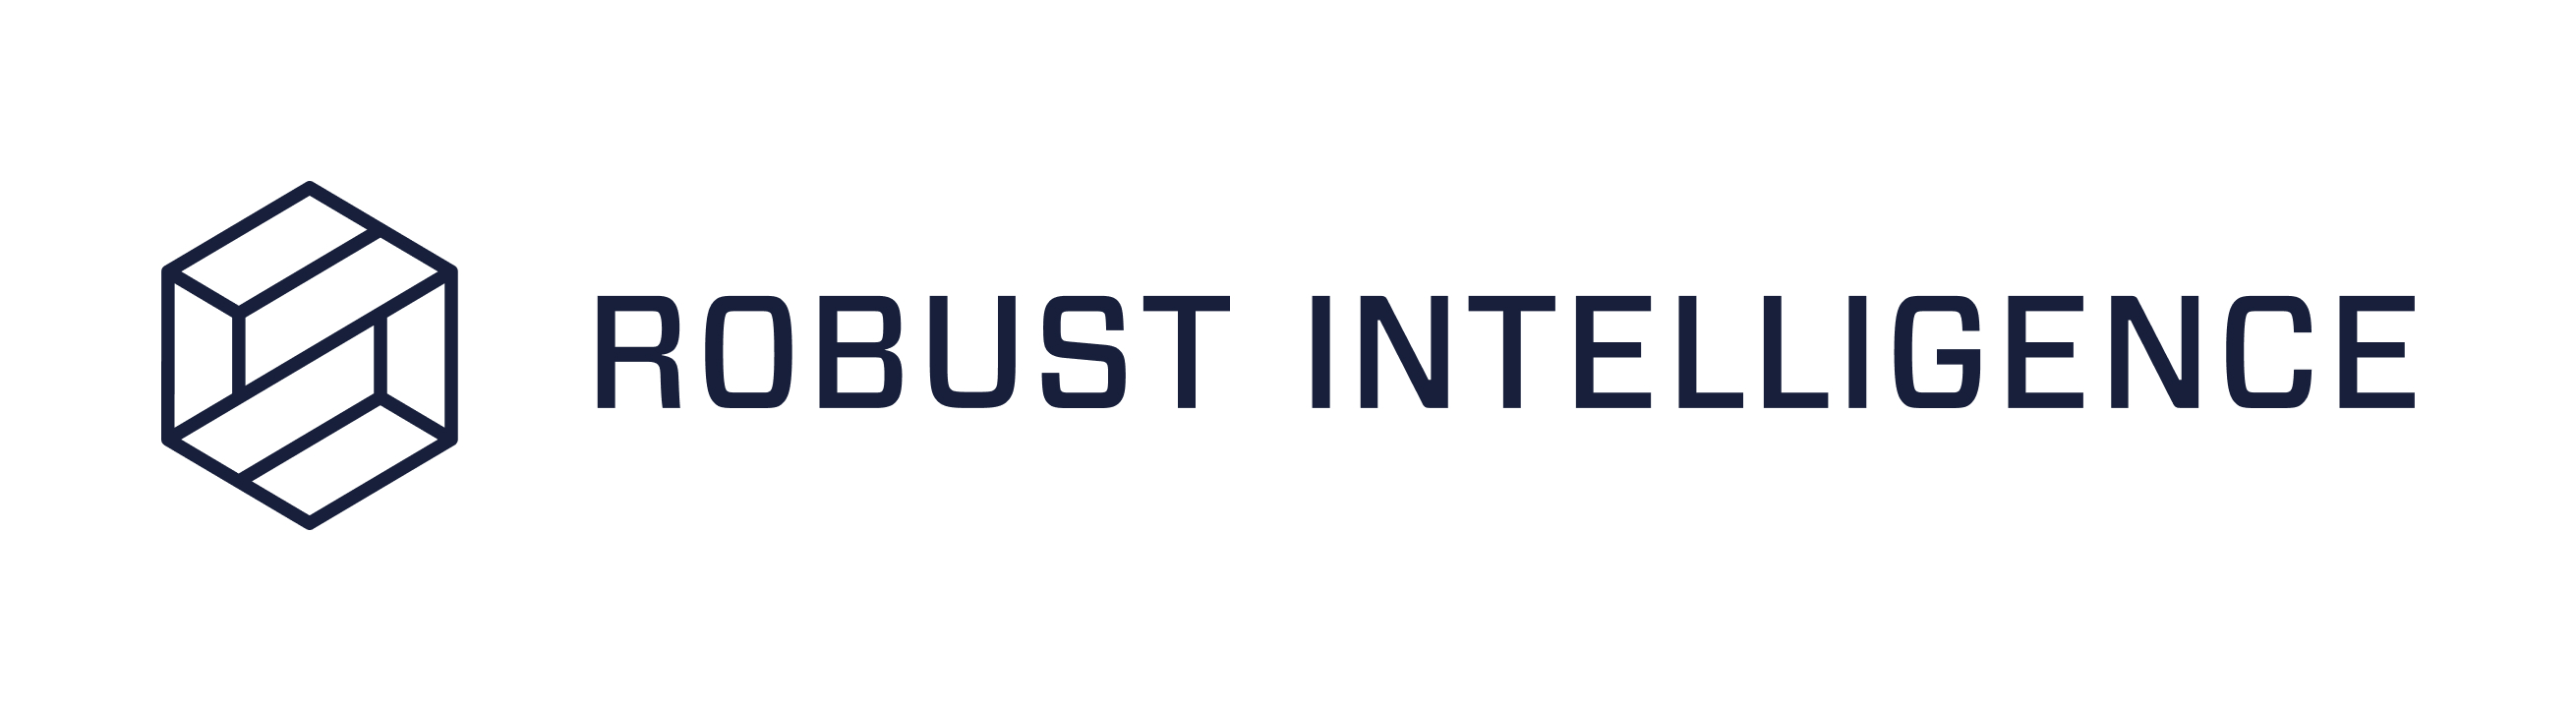 Robust Intelligence Company Logo